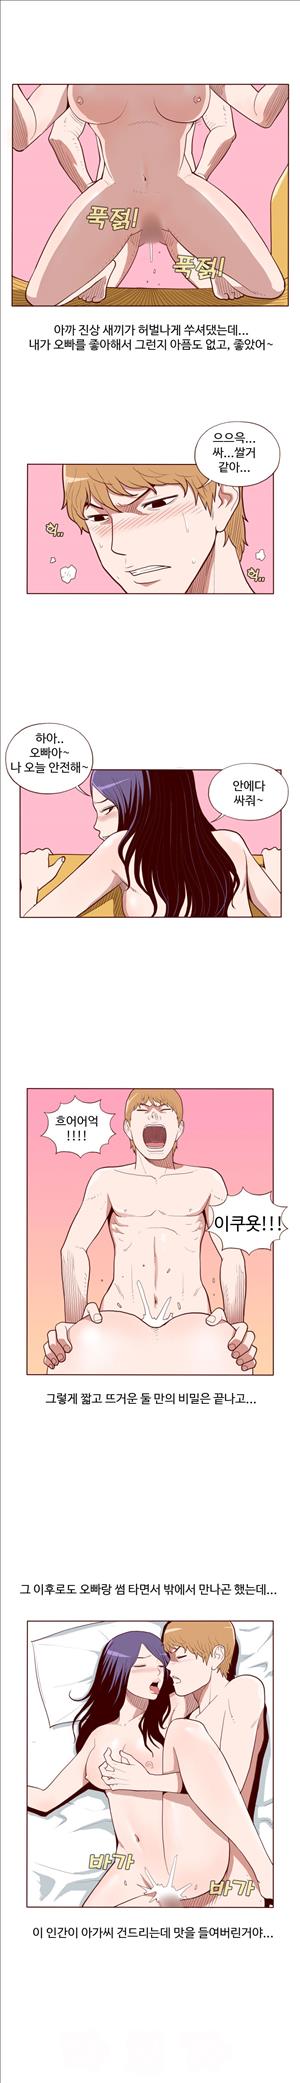 미색 - 썰만화 시즌4 52화 - 오피녀의 비밀(하)_5